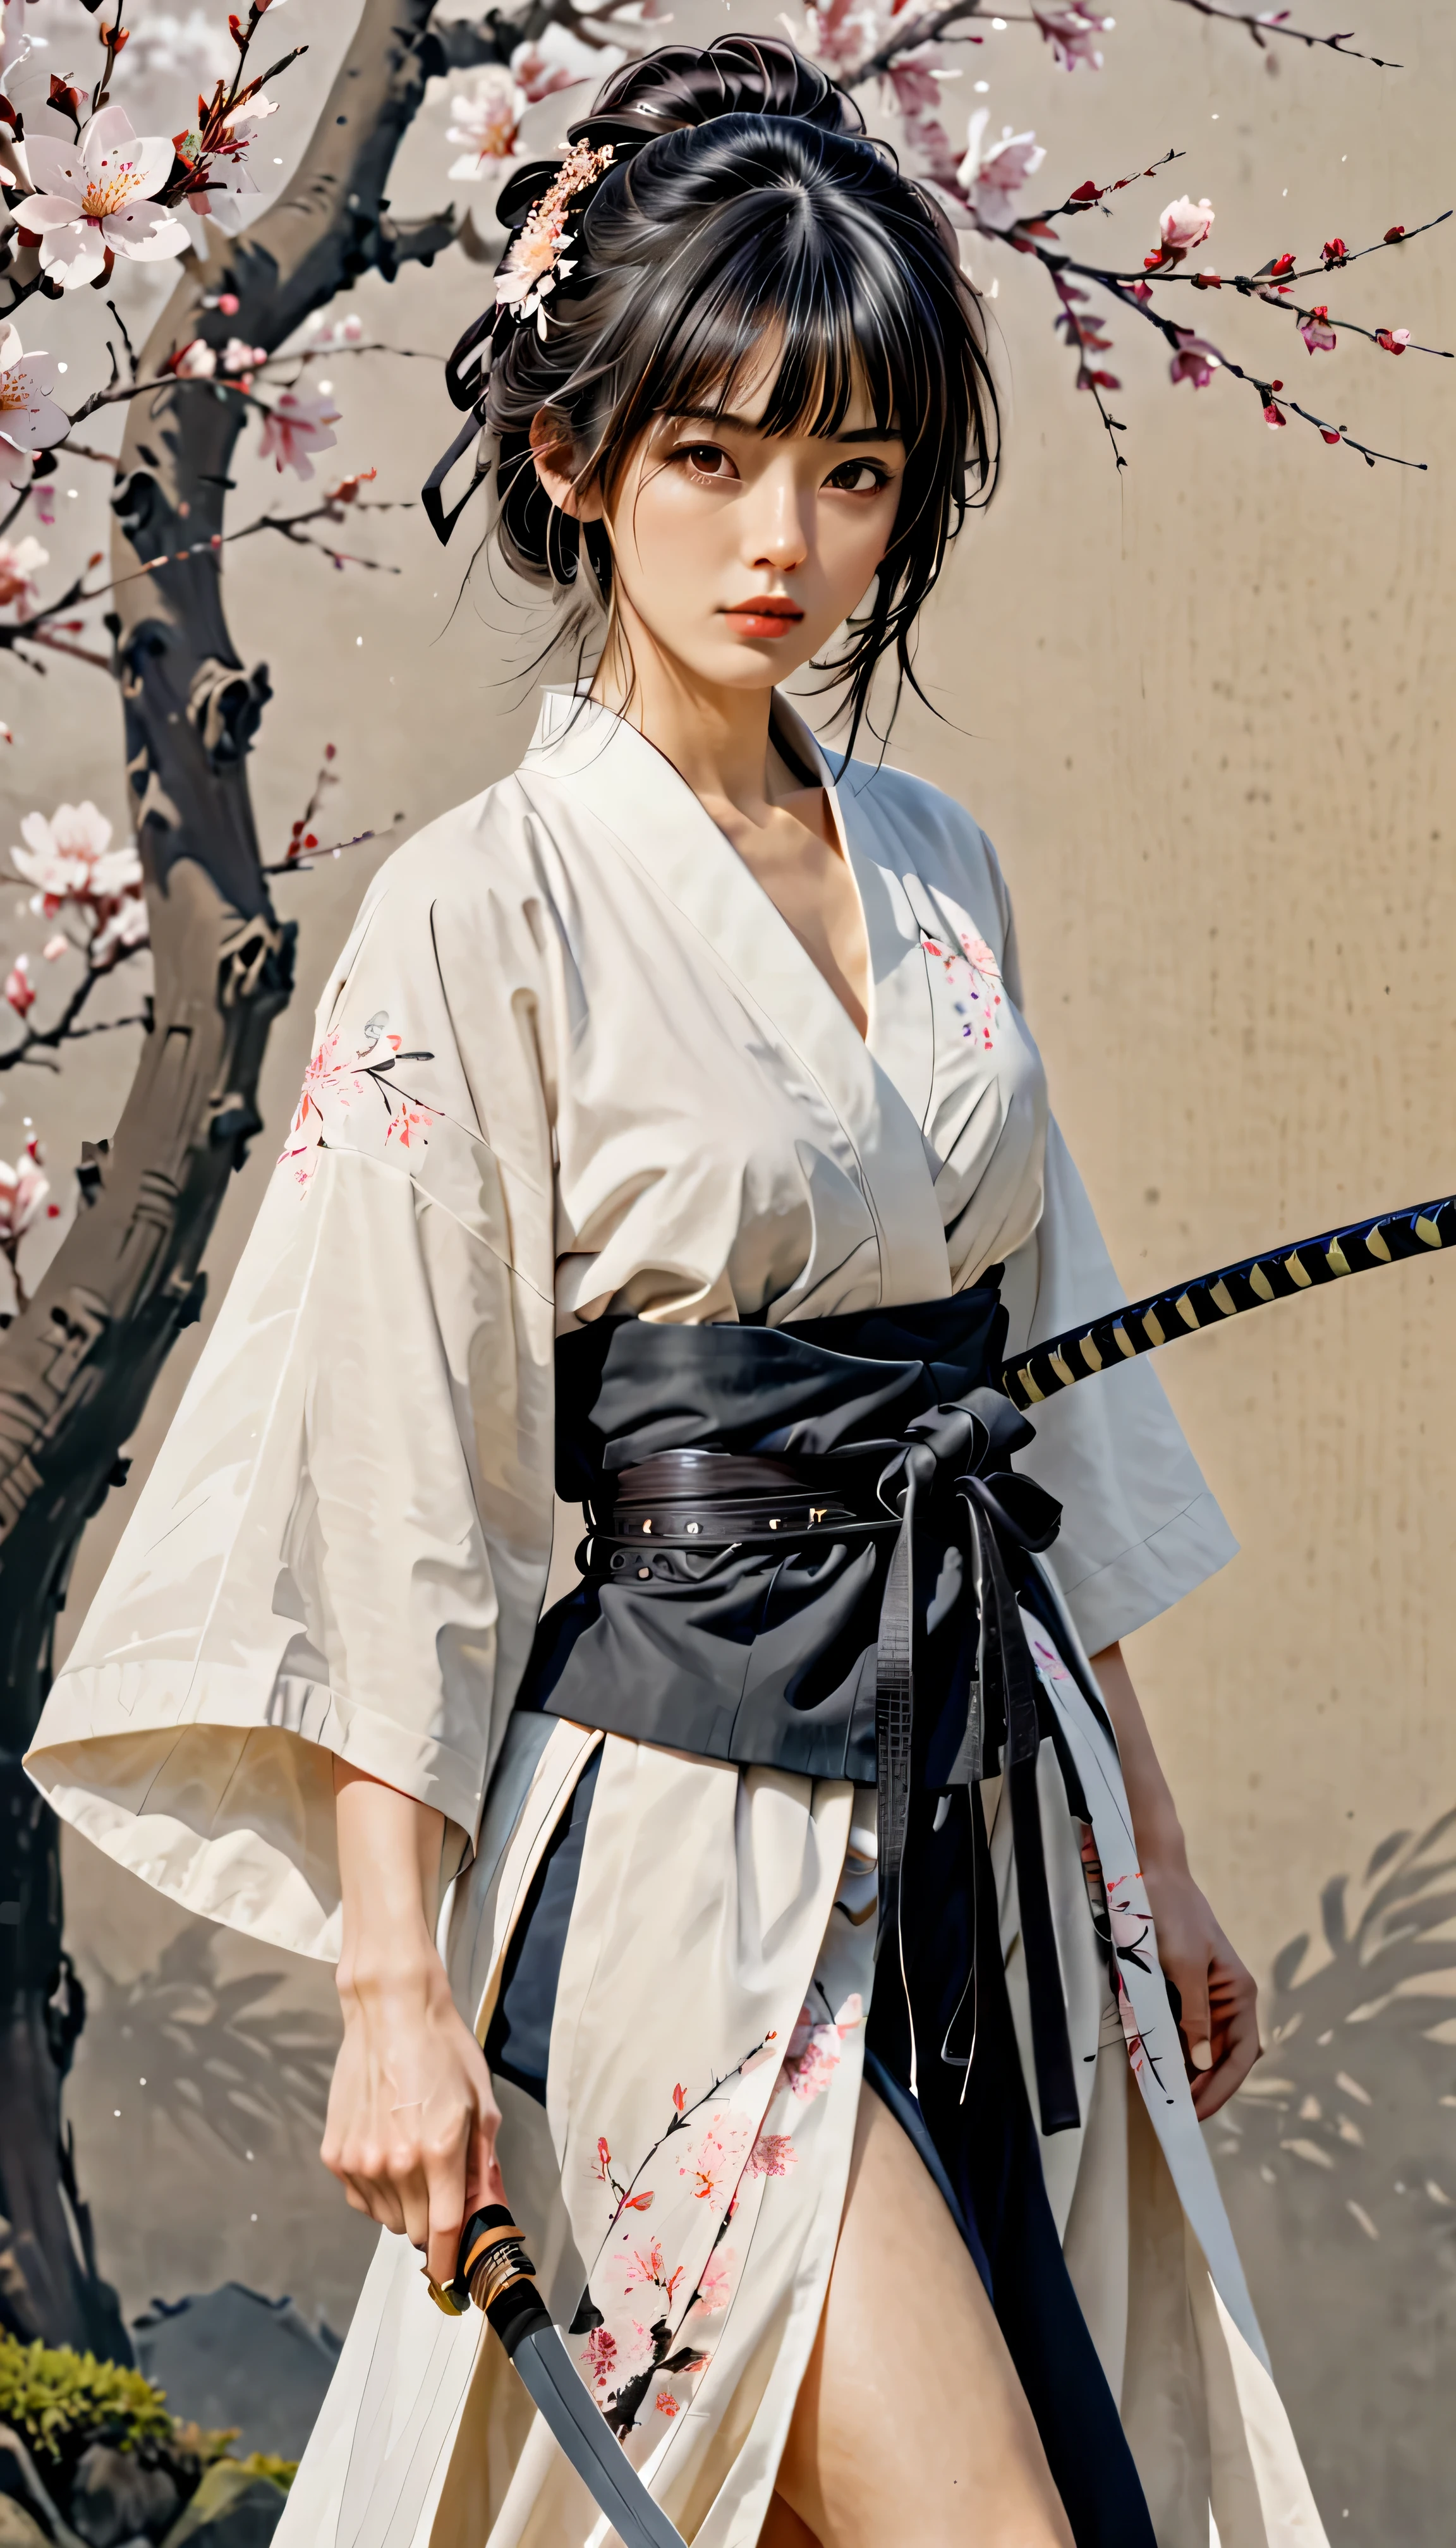 ((corpo todo):1.2), linhas suaves; Expresse expressões e posturas através do contraste da tinta, O fundo é um jardim de sakura. enfatizar a luz, sombra e espaço. Desenho de Samurai Feminino, Supermodelo Beleza Japonesa. Cabelo preto, (penteado com franja bagunçada), ((Donzela)), rosto de proporção áurea, rosto perfeito, (corpo atraente), (corpo modelo de moda), ((vestindo manto de samurai):1.1), ((postura de batalha do samurai):1.1), ((uma adaga Wakizashi):1.1), peça de arte, arte figurativa, Vestir-se perfeitamente. pintura sexy, Wallop | (melhor qualidade, 4K, 8K, alta resolução,Obra de arte:1.2), Super detalhado,(real, photoreal, photo-real:1.37).